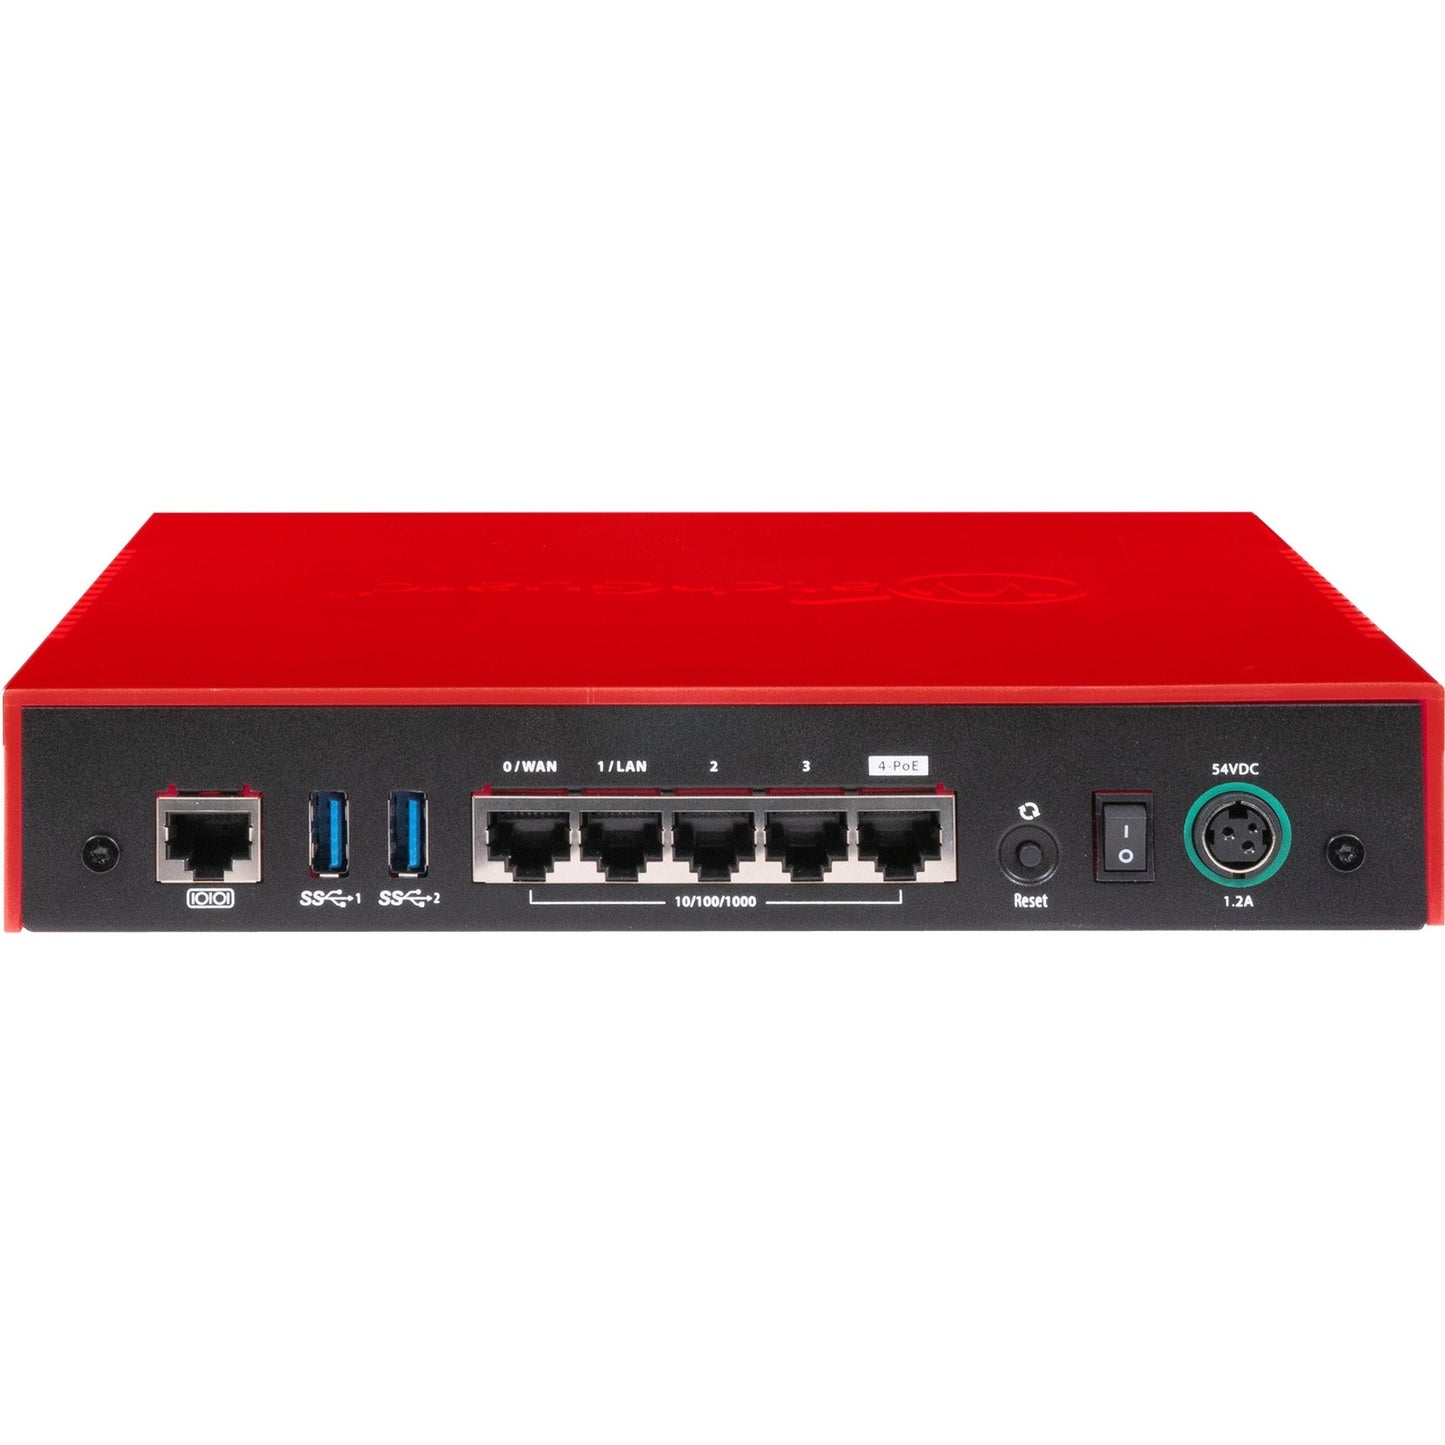 WatchGuard Firebox T40-W Network Security/Firewall Appliance